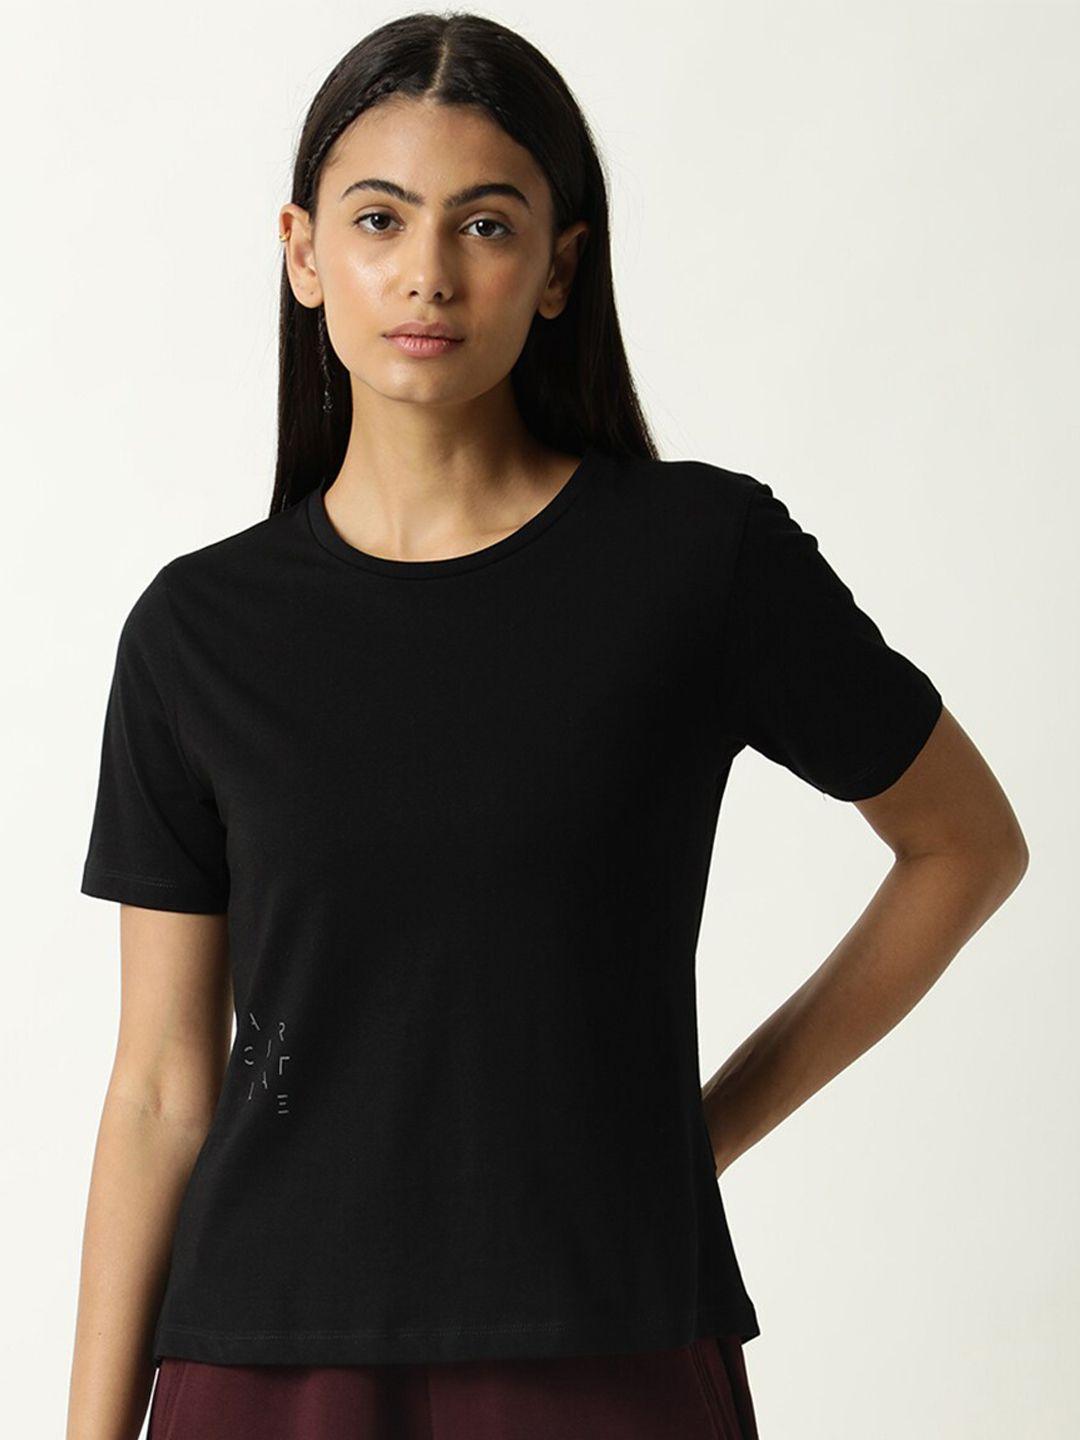 articale women black solid slim fit cotton t-shirt